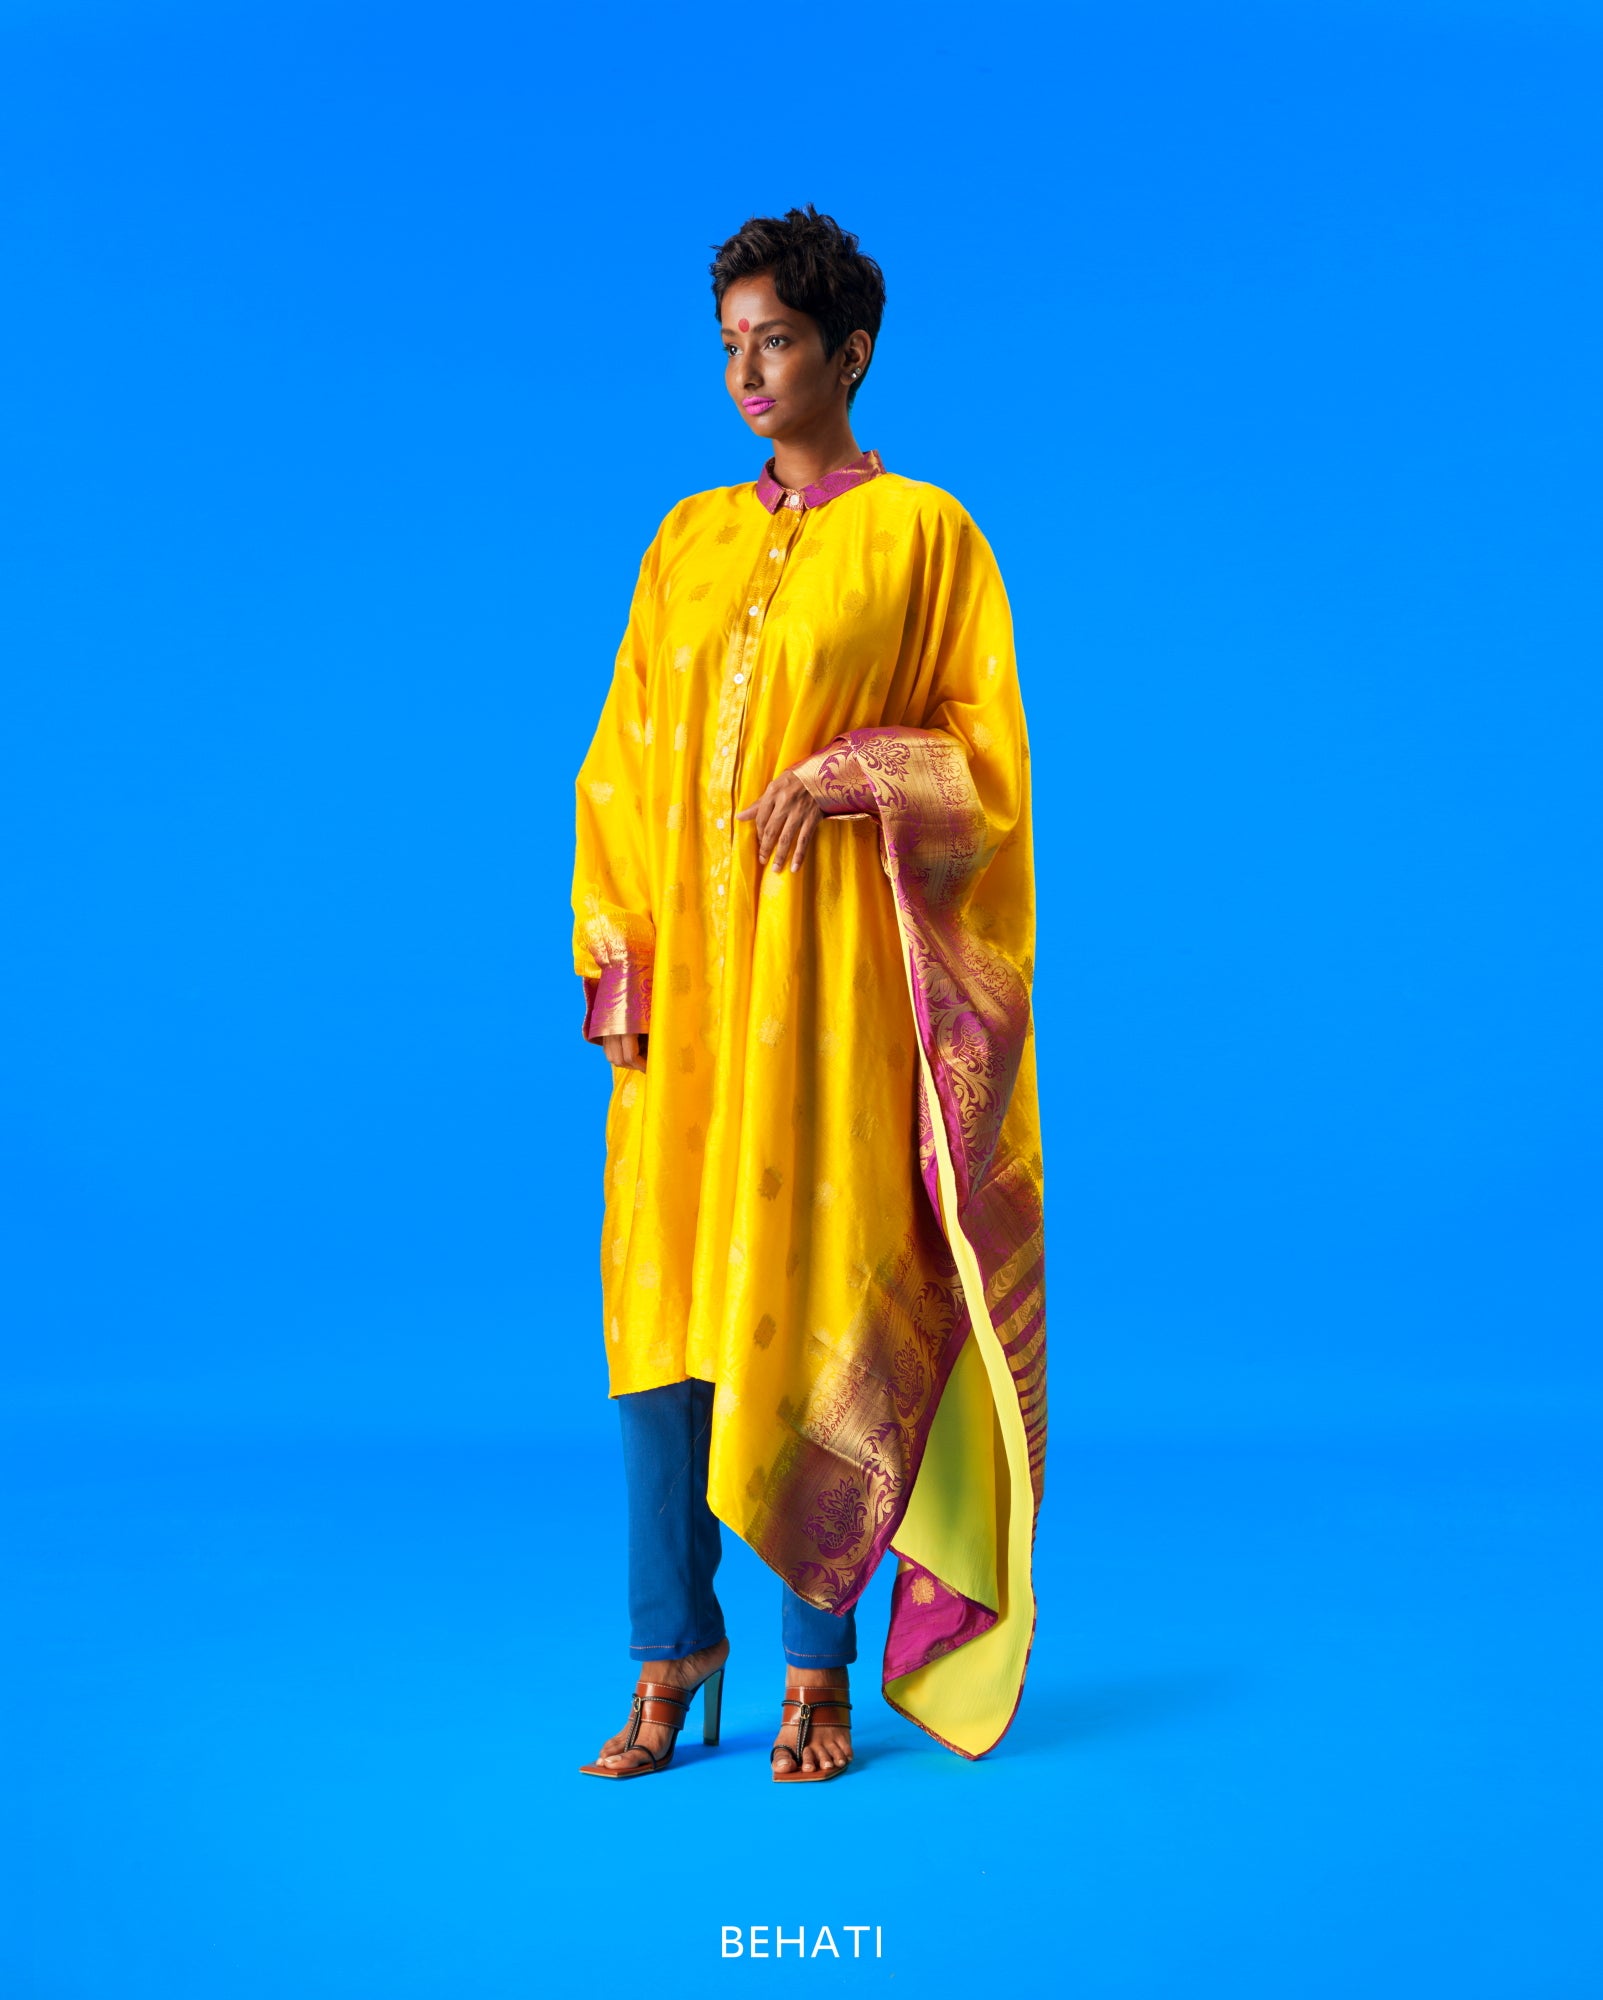 Shirtree in Chanderi (yellow)